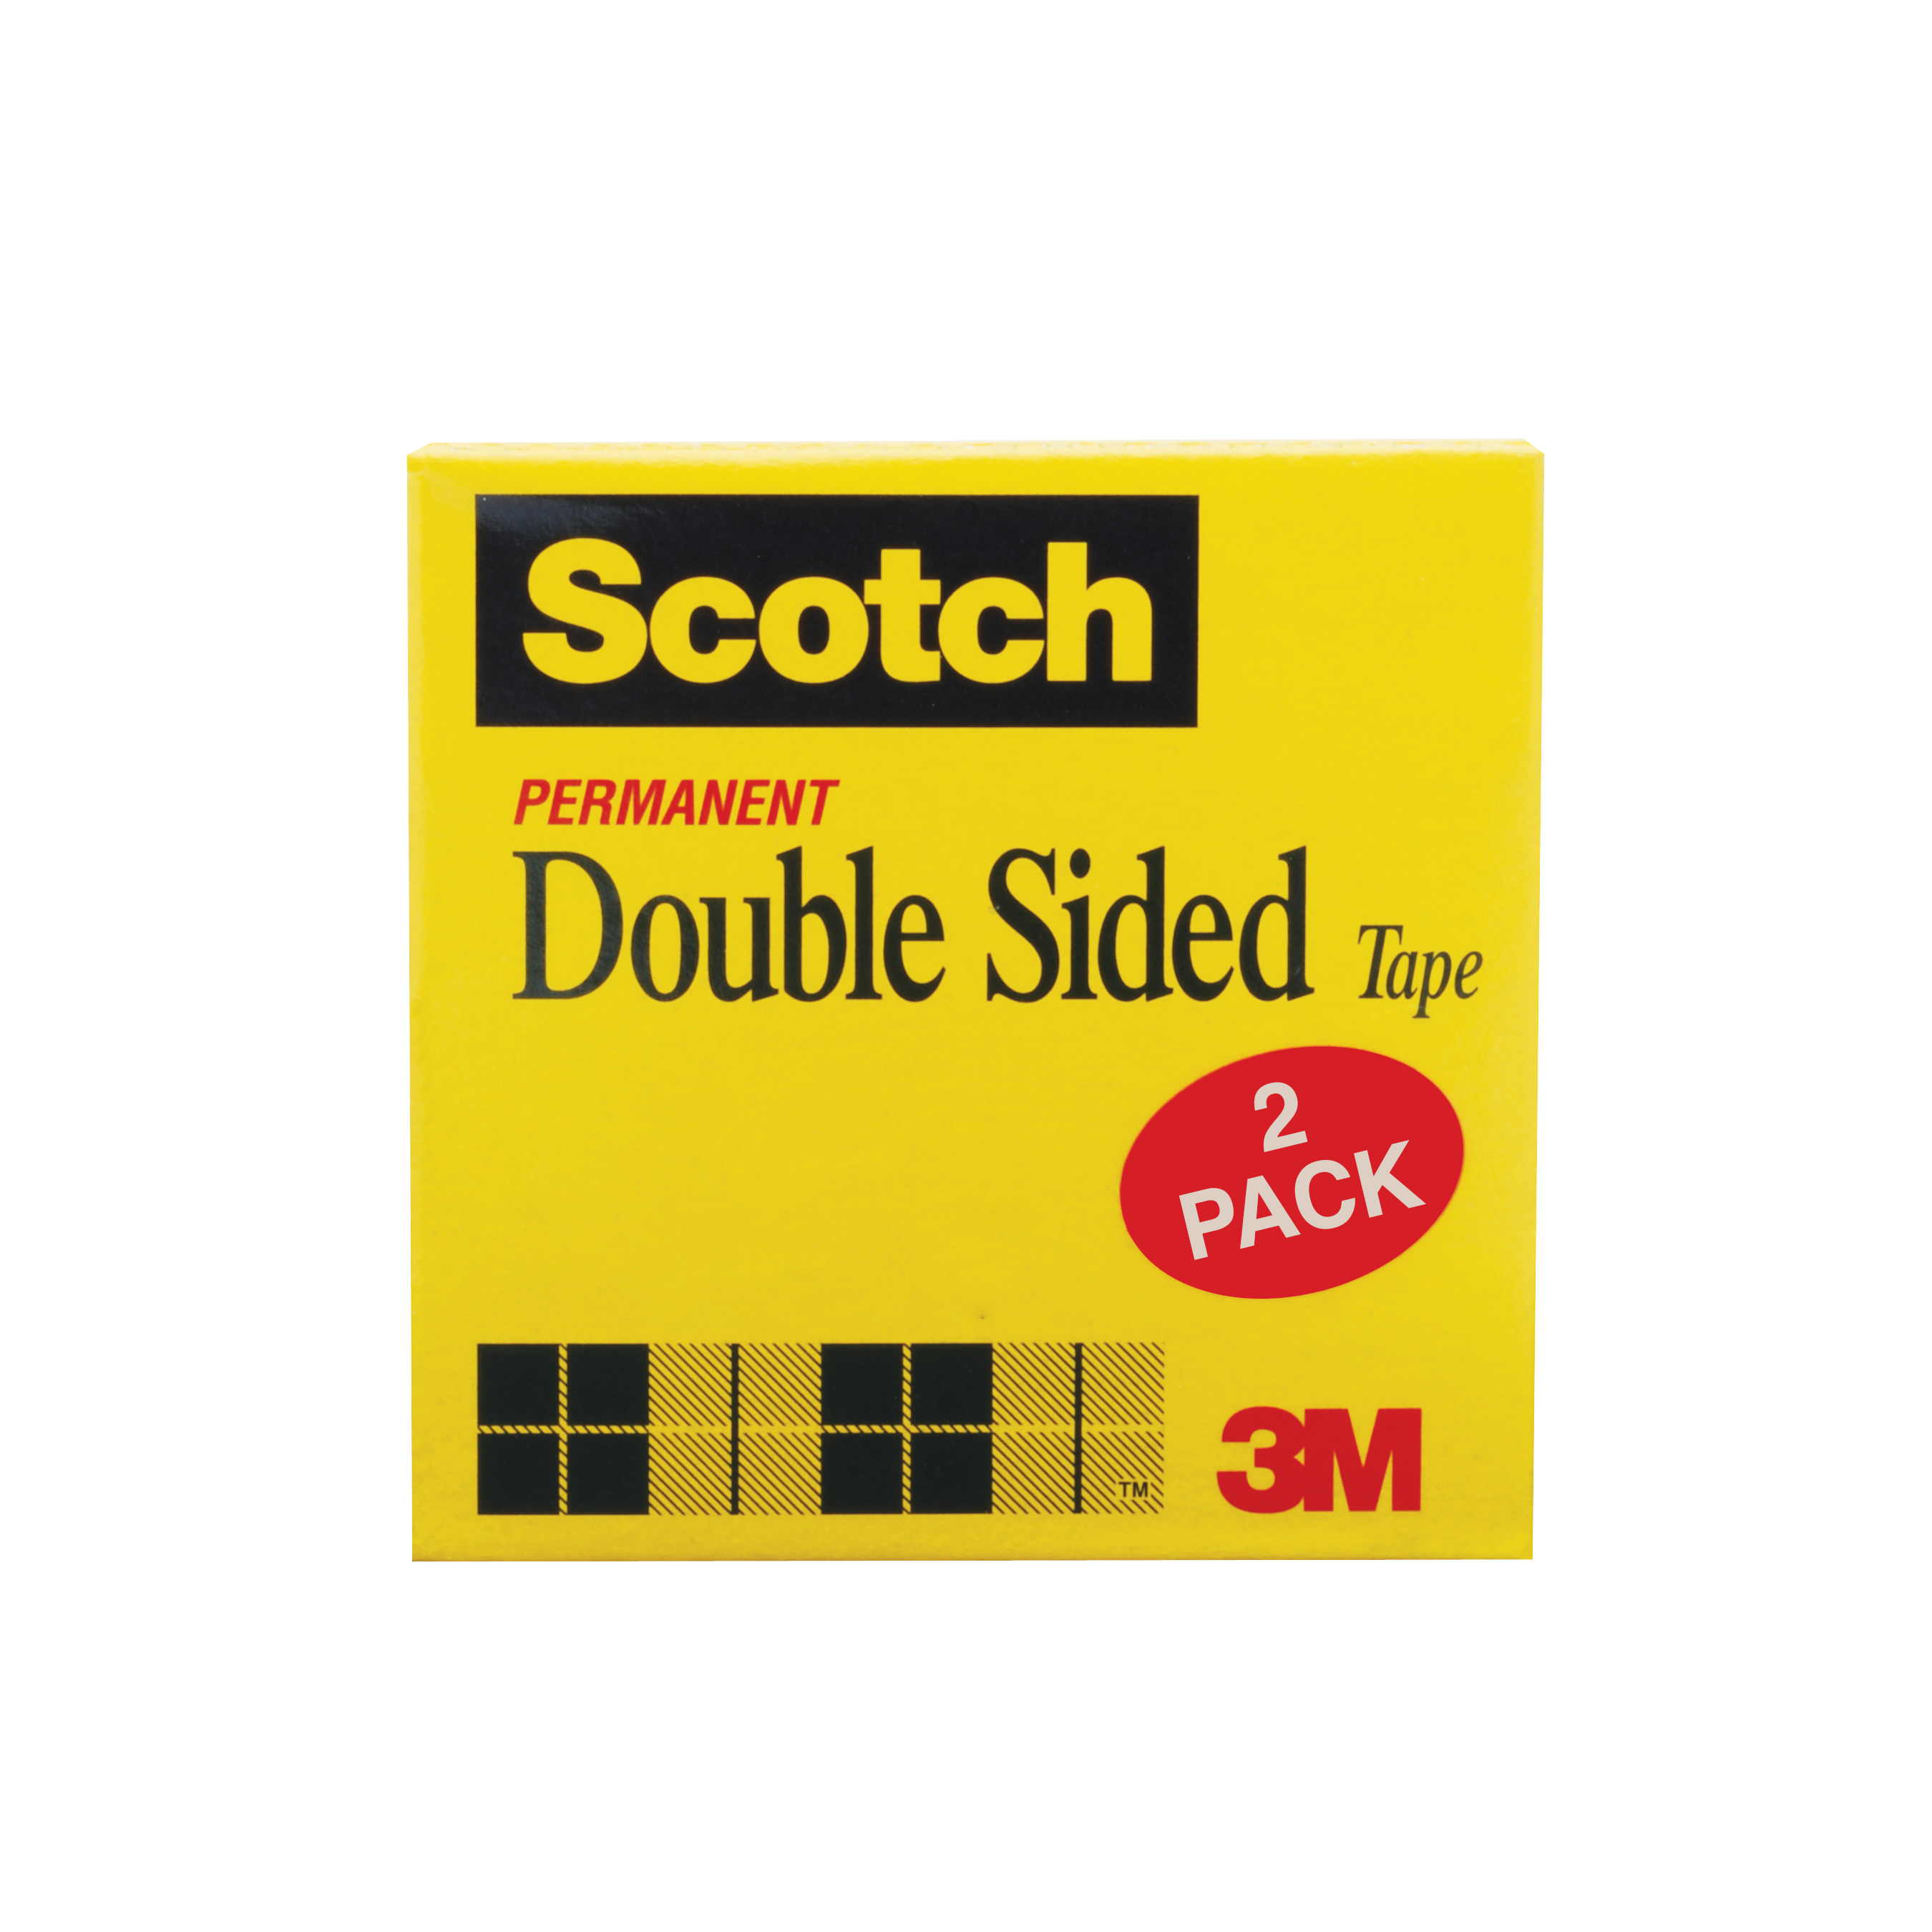 Greener Clean Non-Scratch Scrub Sponge DMi PK by Scotch-Brite 3M//COMMERCIAL TAPE DIV. 4 1//2 x 2 4//5 Scotch-Brite 3//Pack 97033